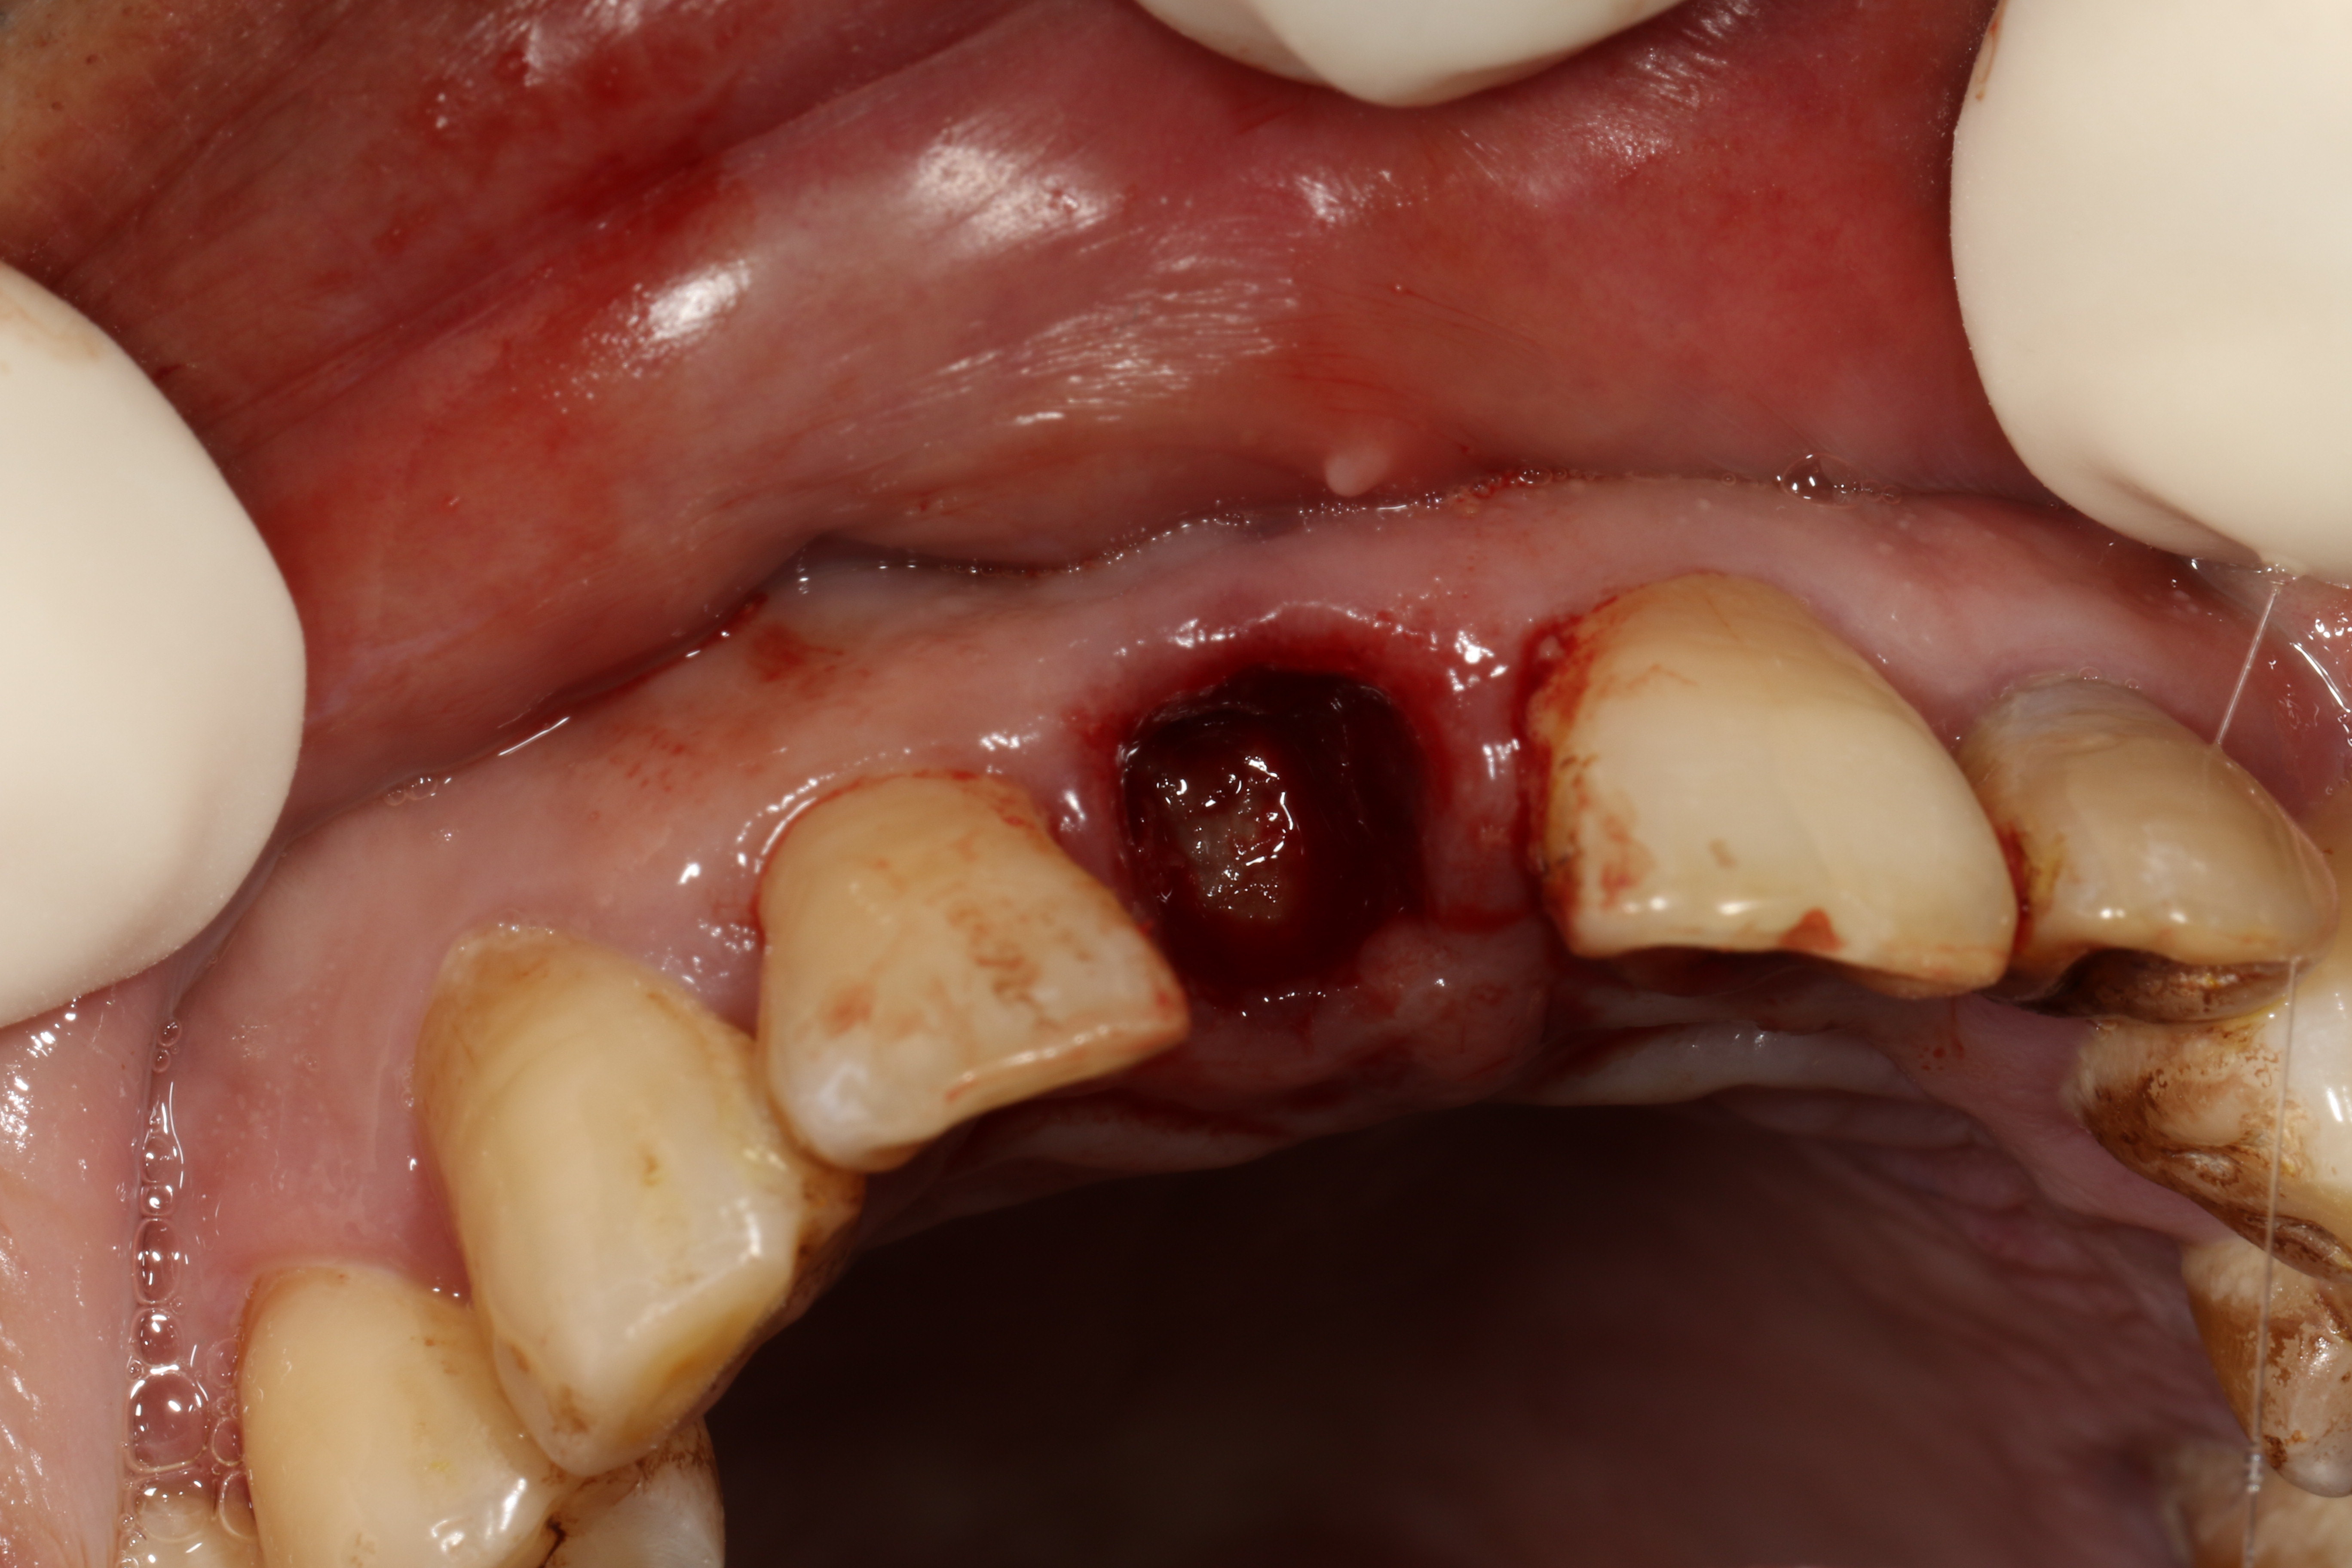 前牙根部折断后的迅速牙再生 